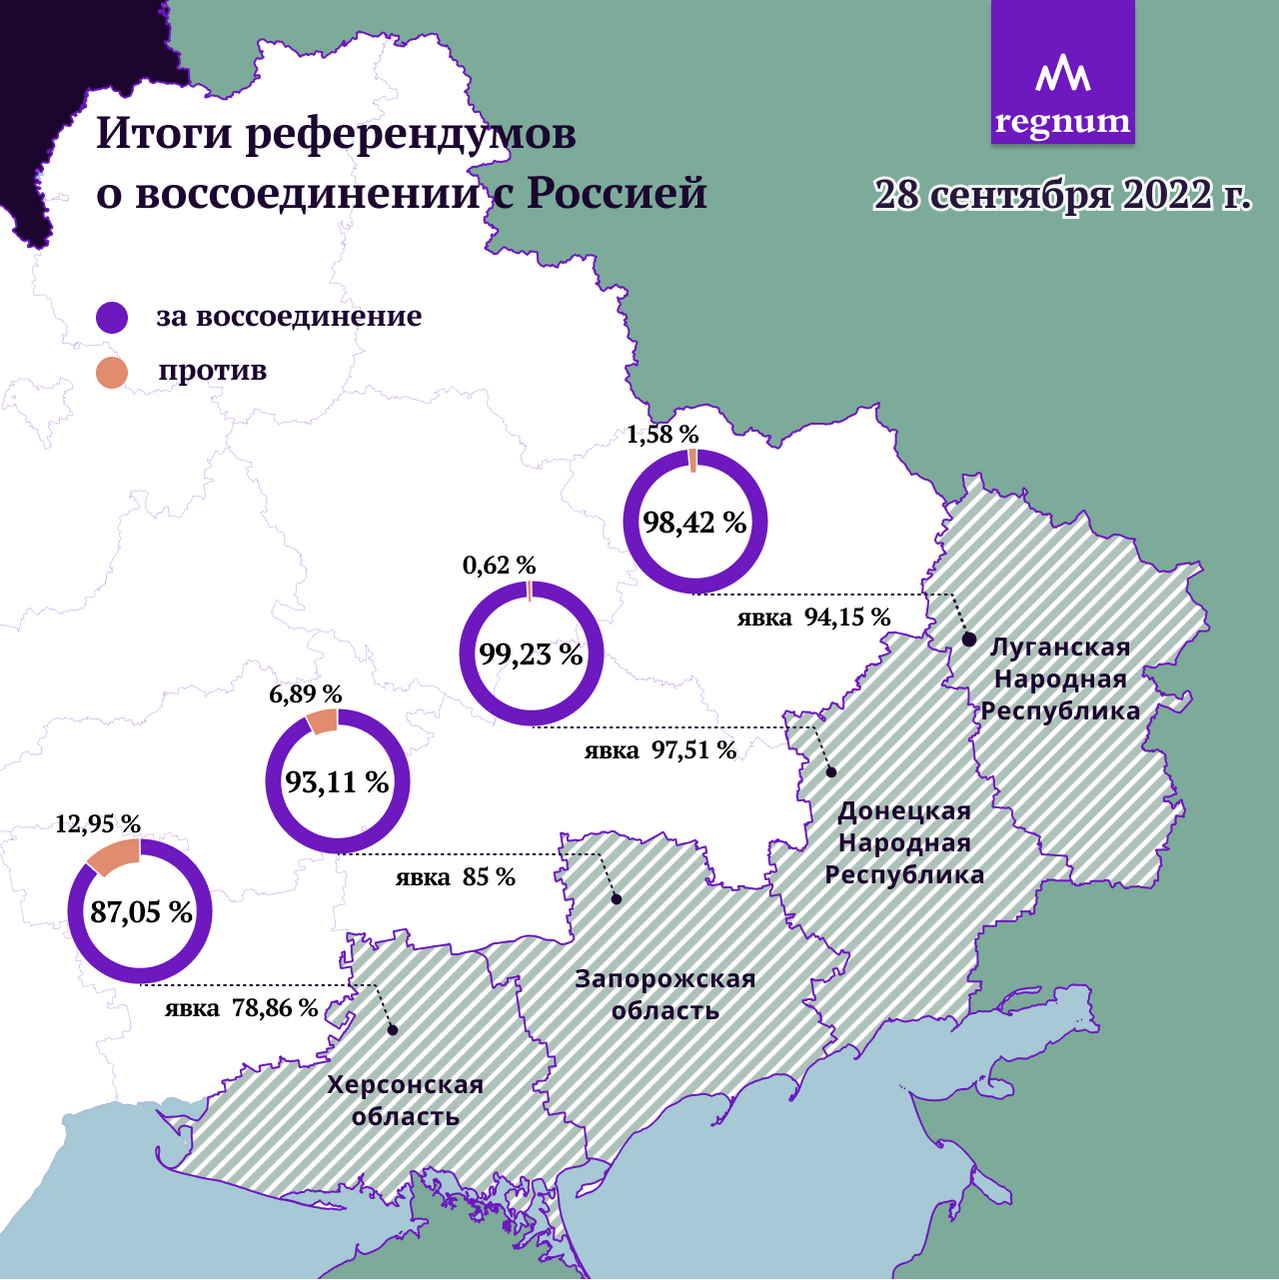 Итоги референдумов о воссоединении с Россией 28 сентября 2022 года